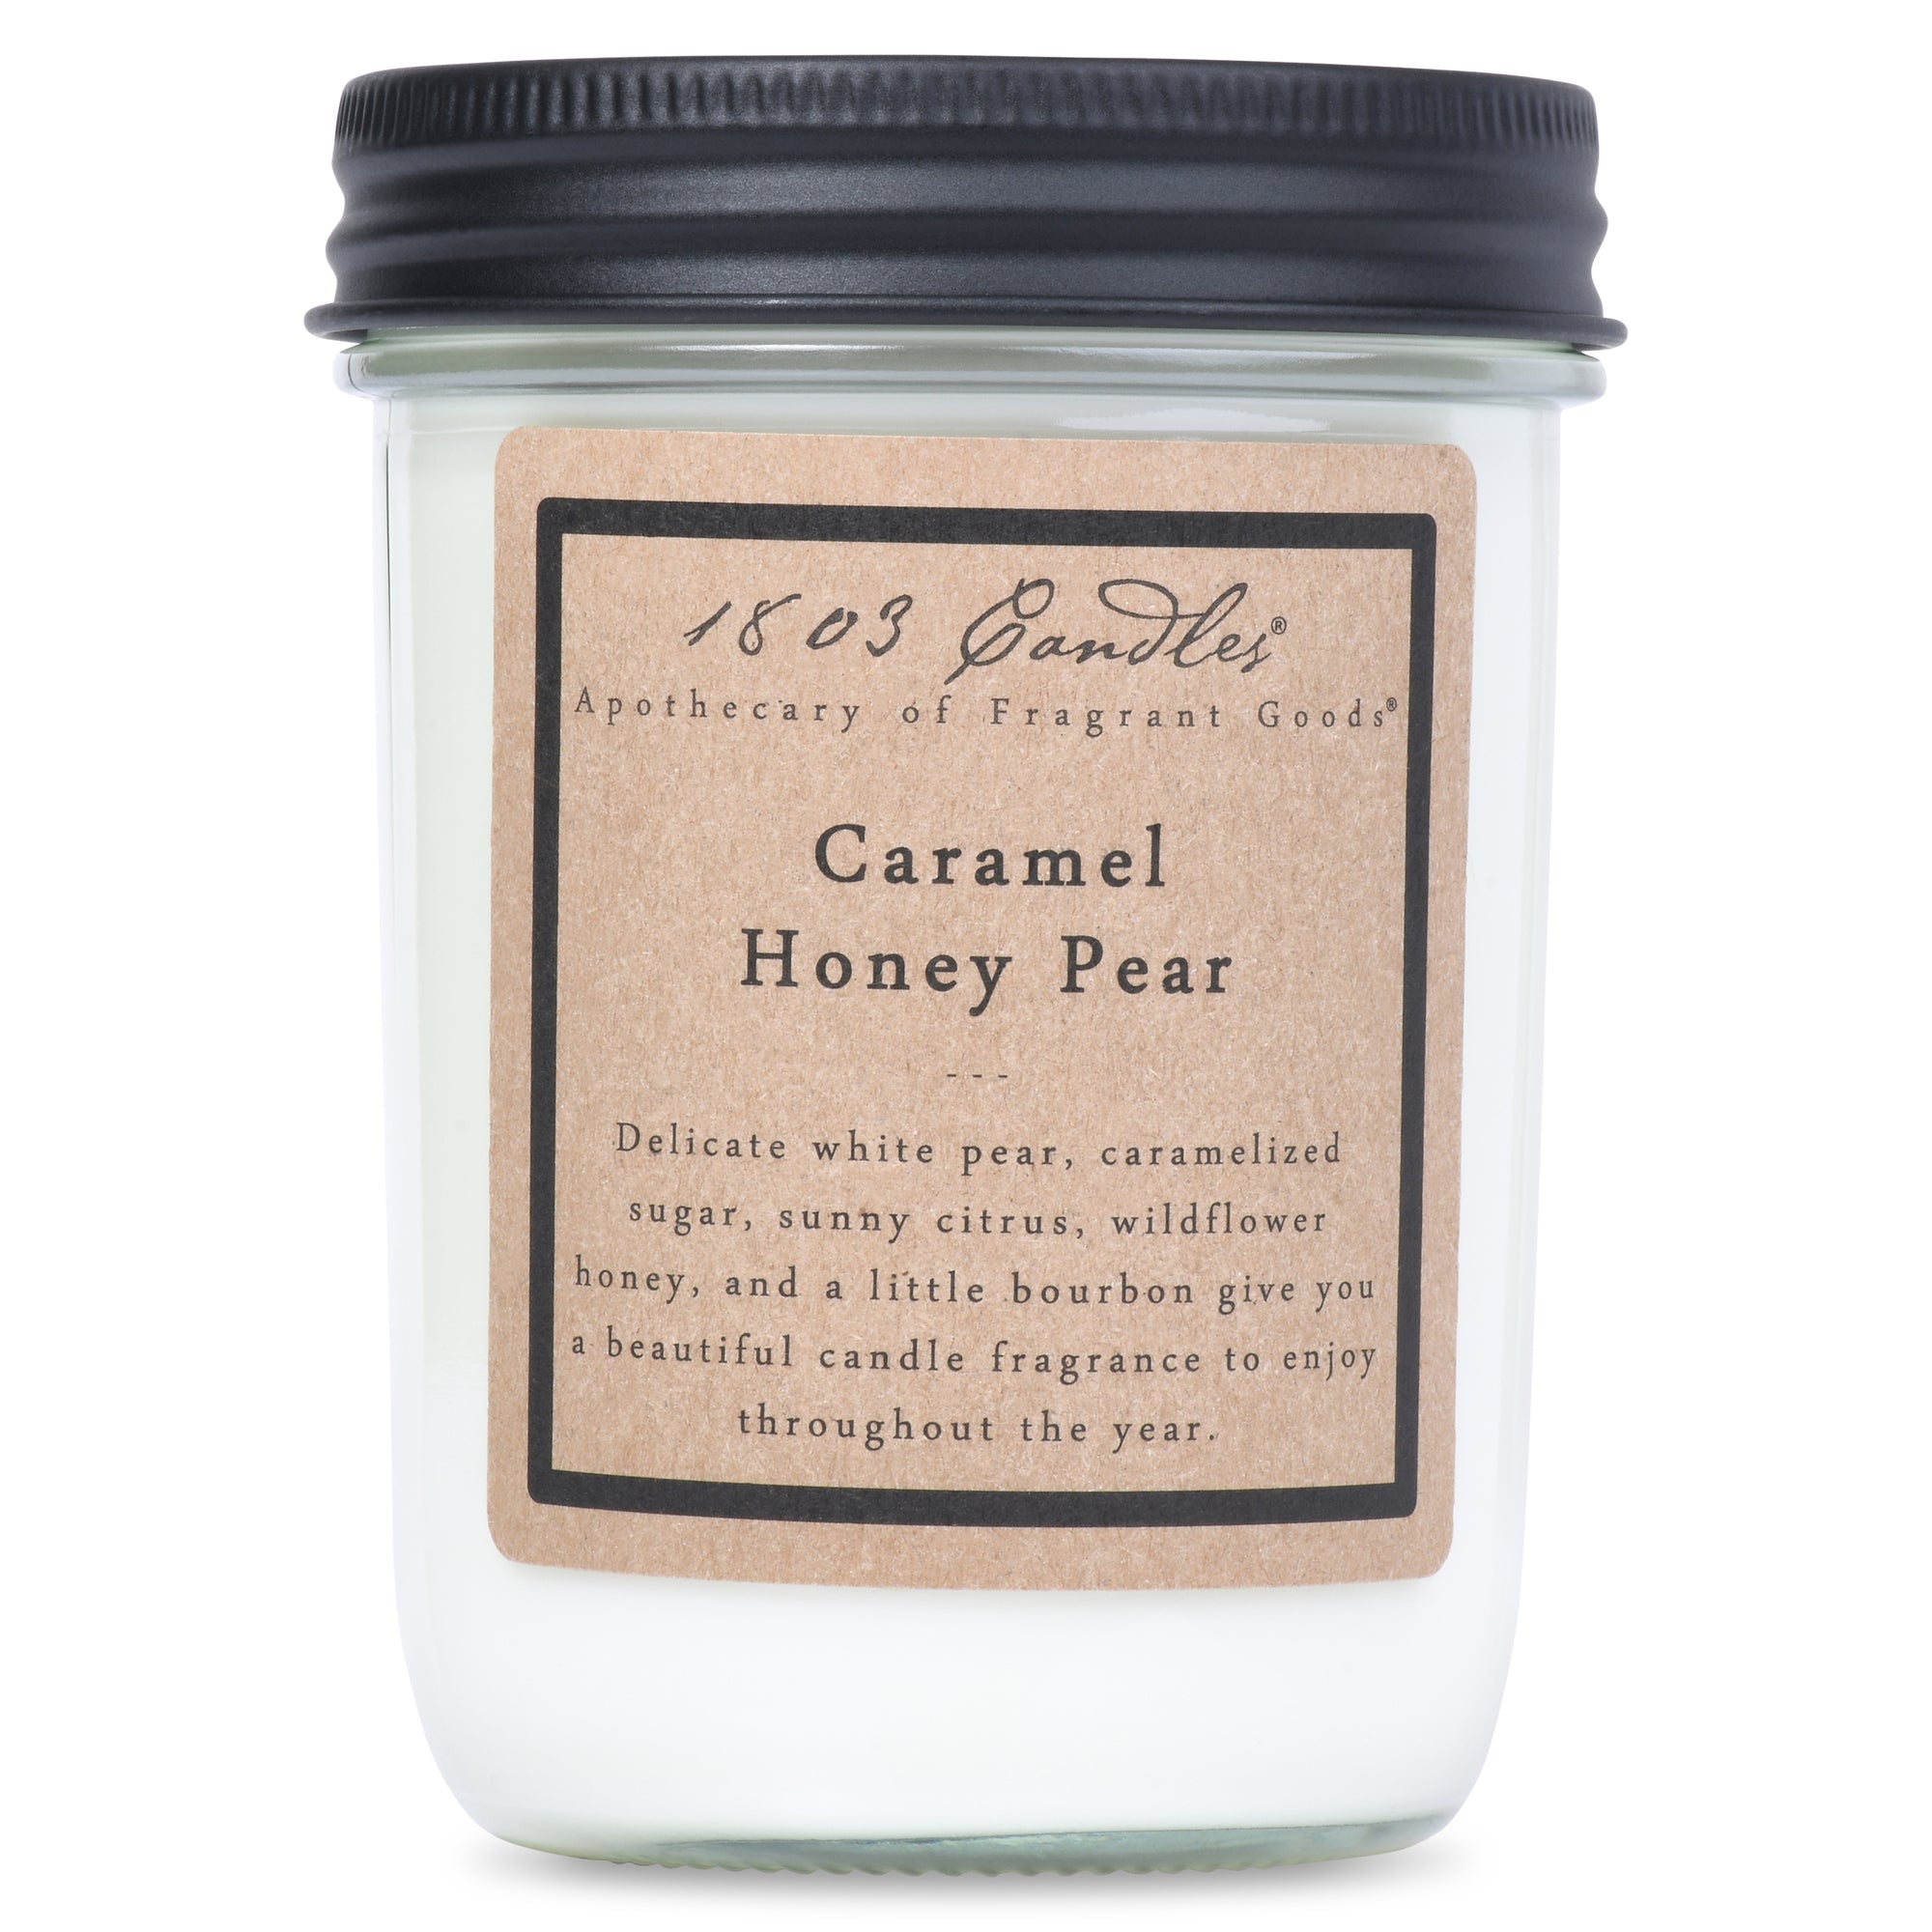 Caramel Honey Pear Soy Jar (14 oz)